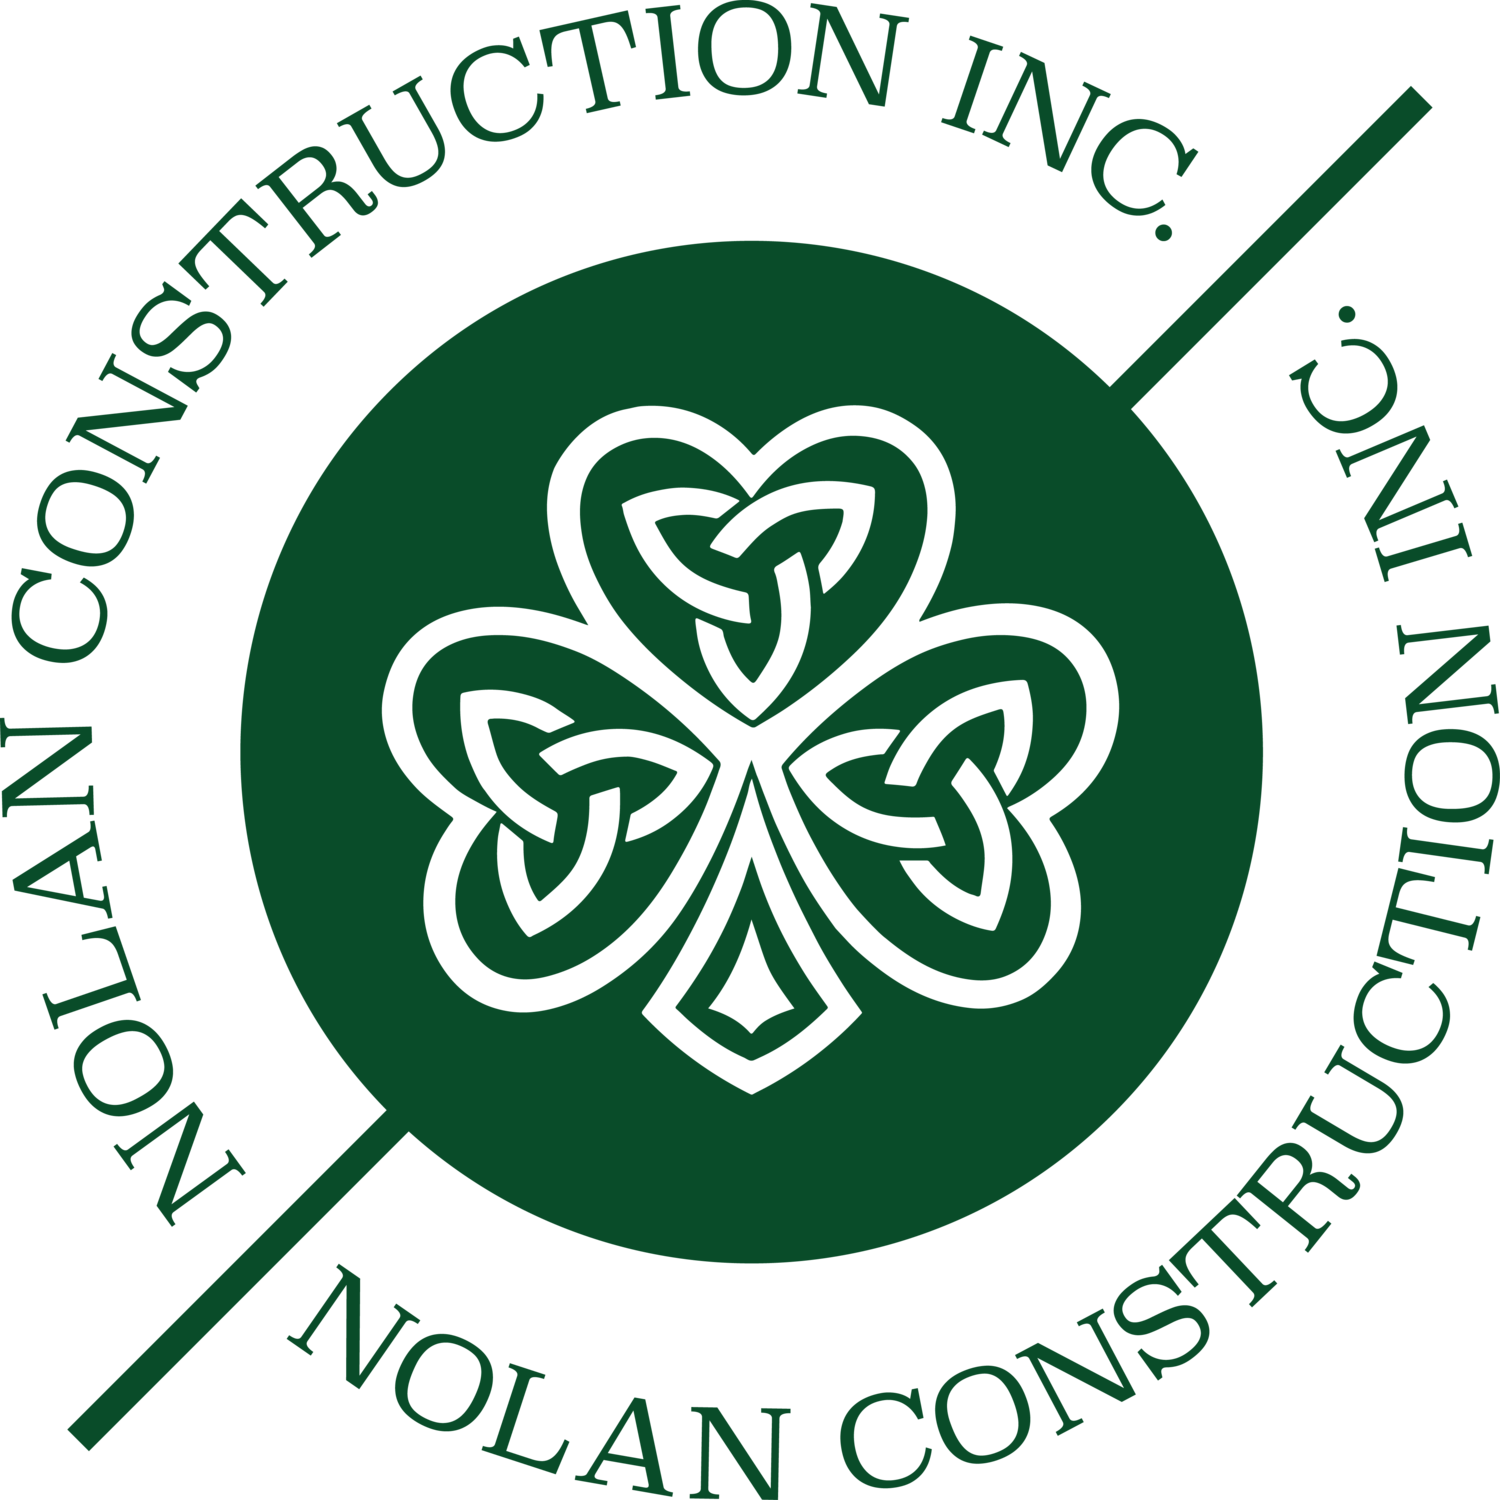 Nolan Construction Inc.